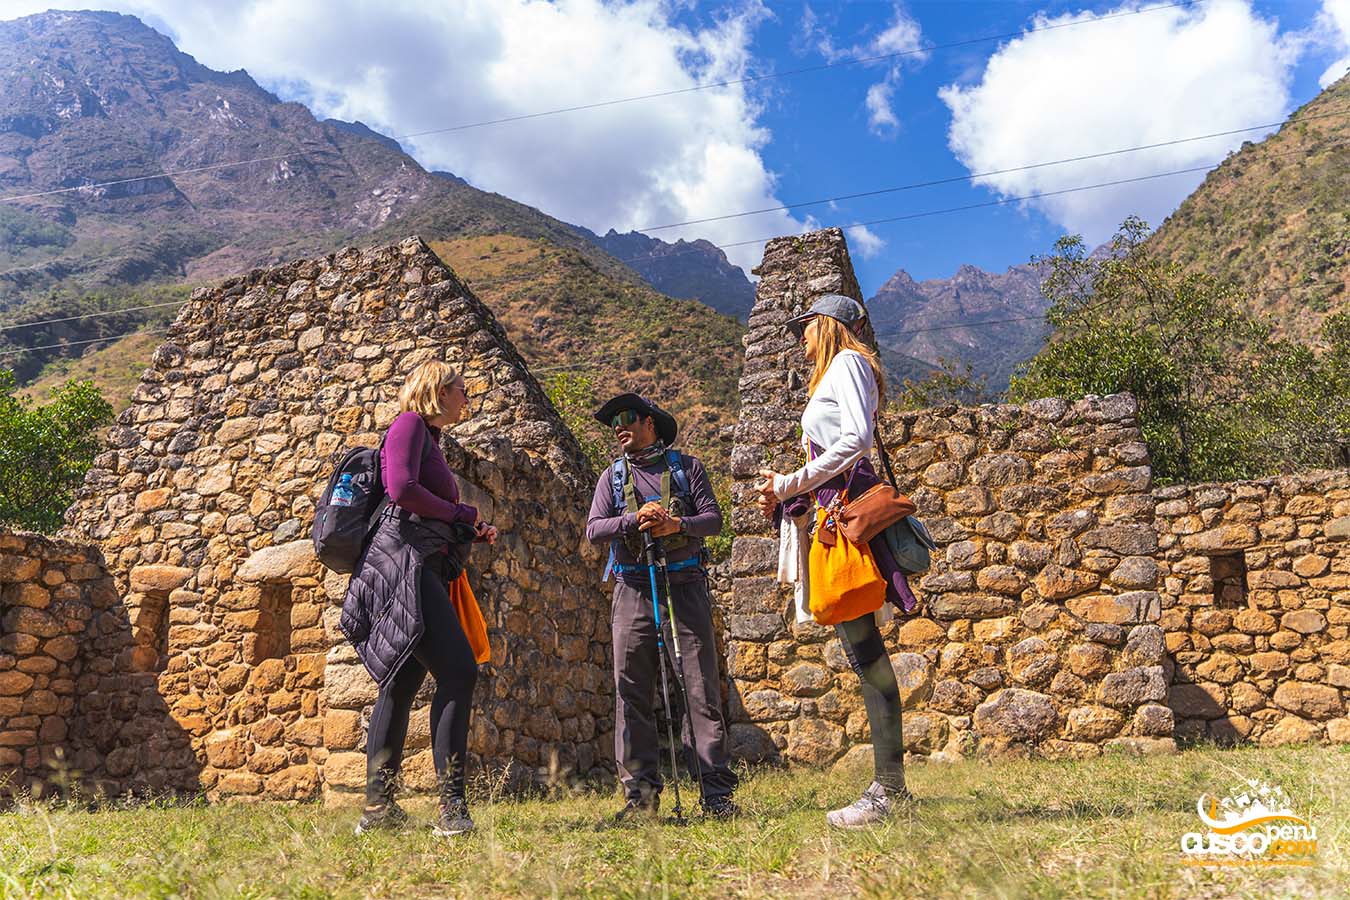 Bagagem na Trilha Inca. Fonte: CuscoPeru.com